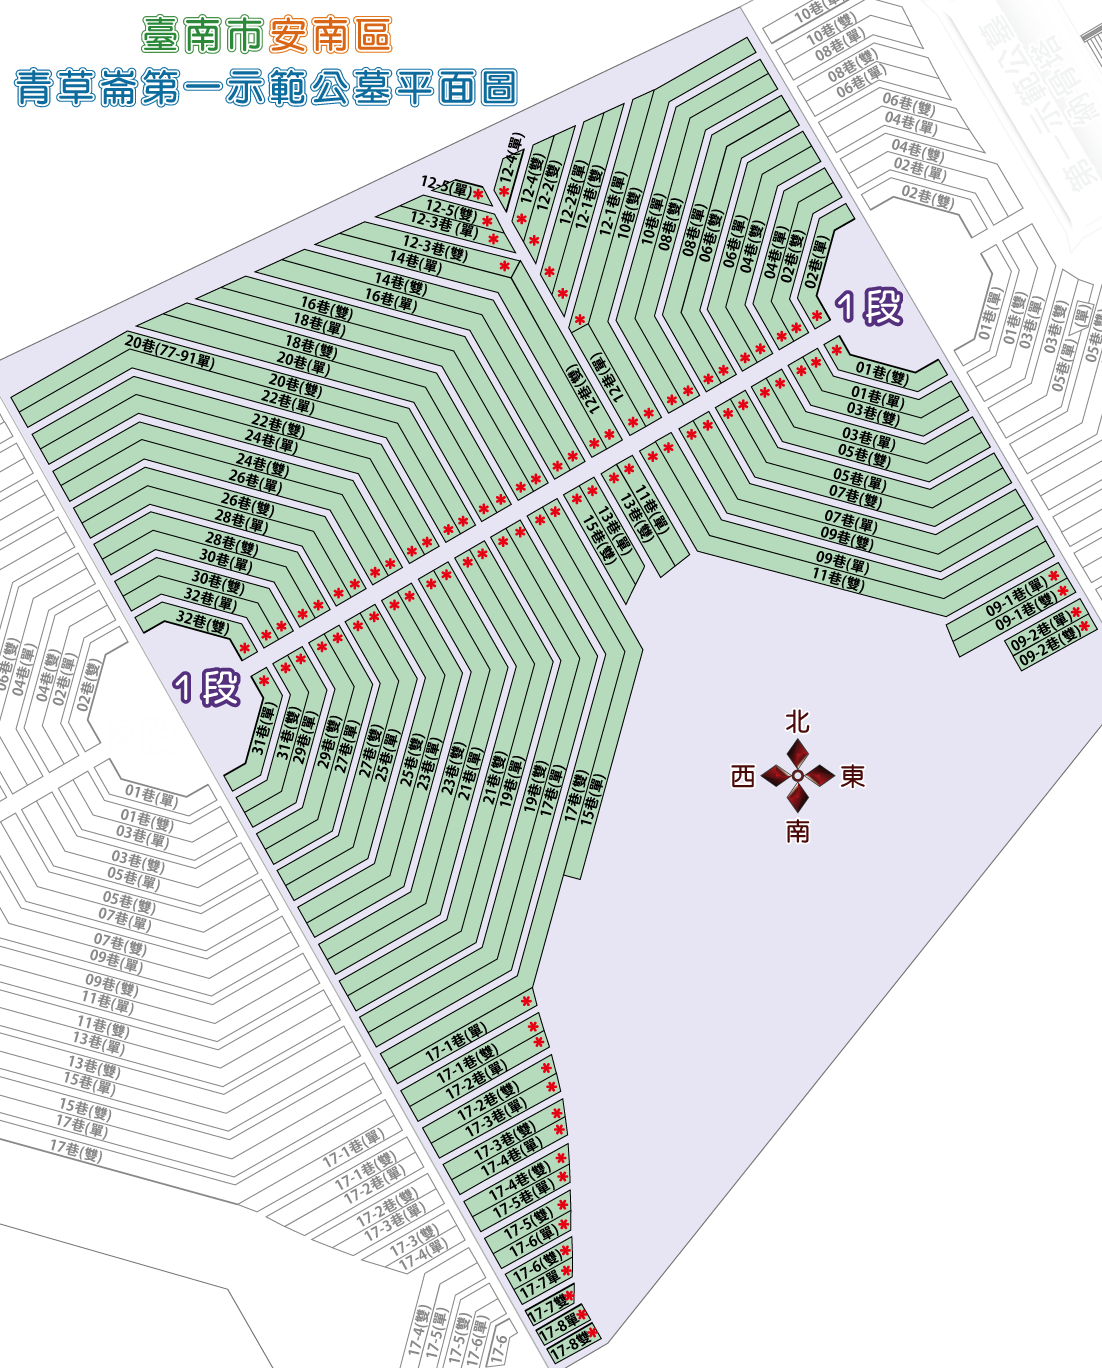 安南區第一示範公墓福壽路一段平面圖